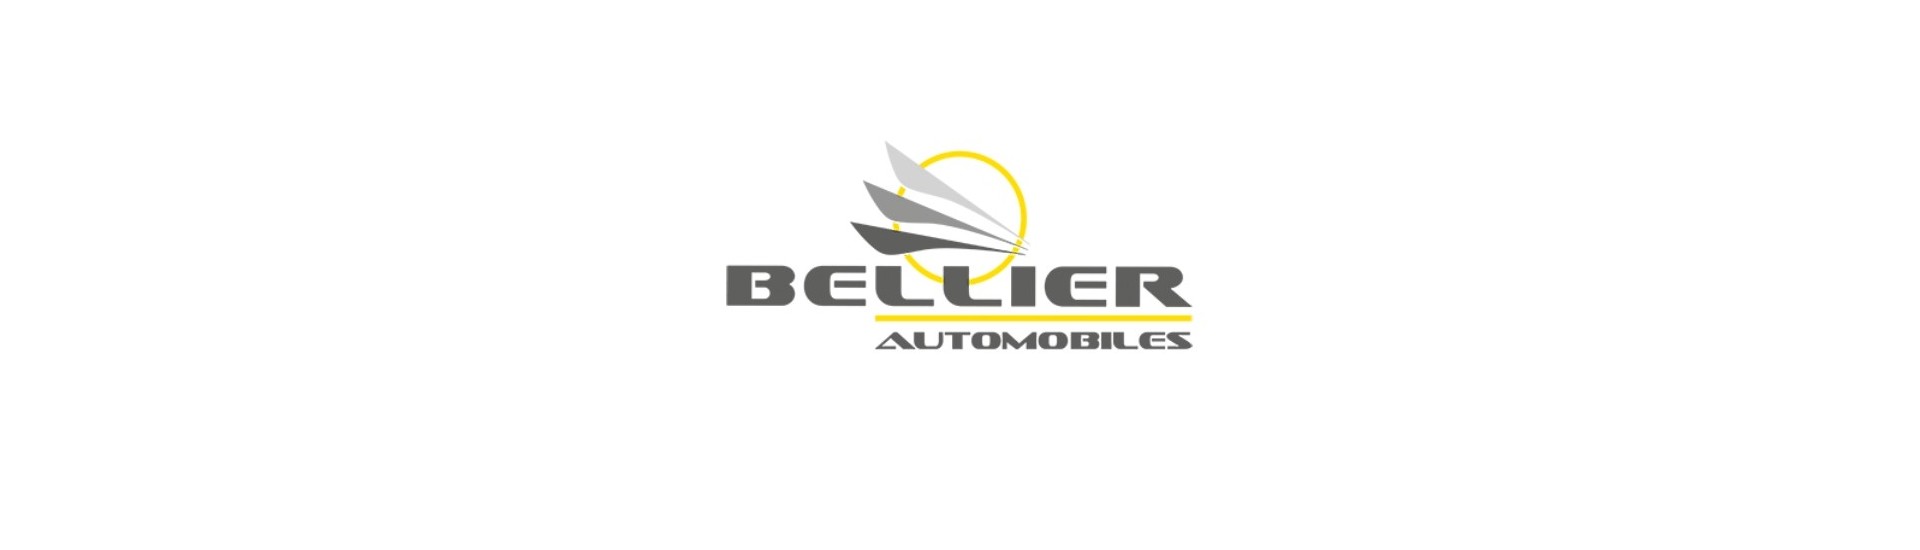 Metall-Support zum besten Preis für Auto ohne Lizenz Bellier